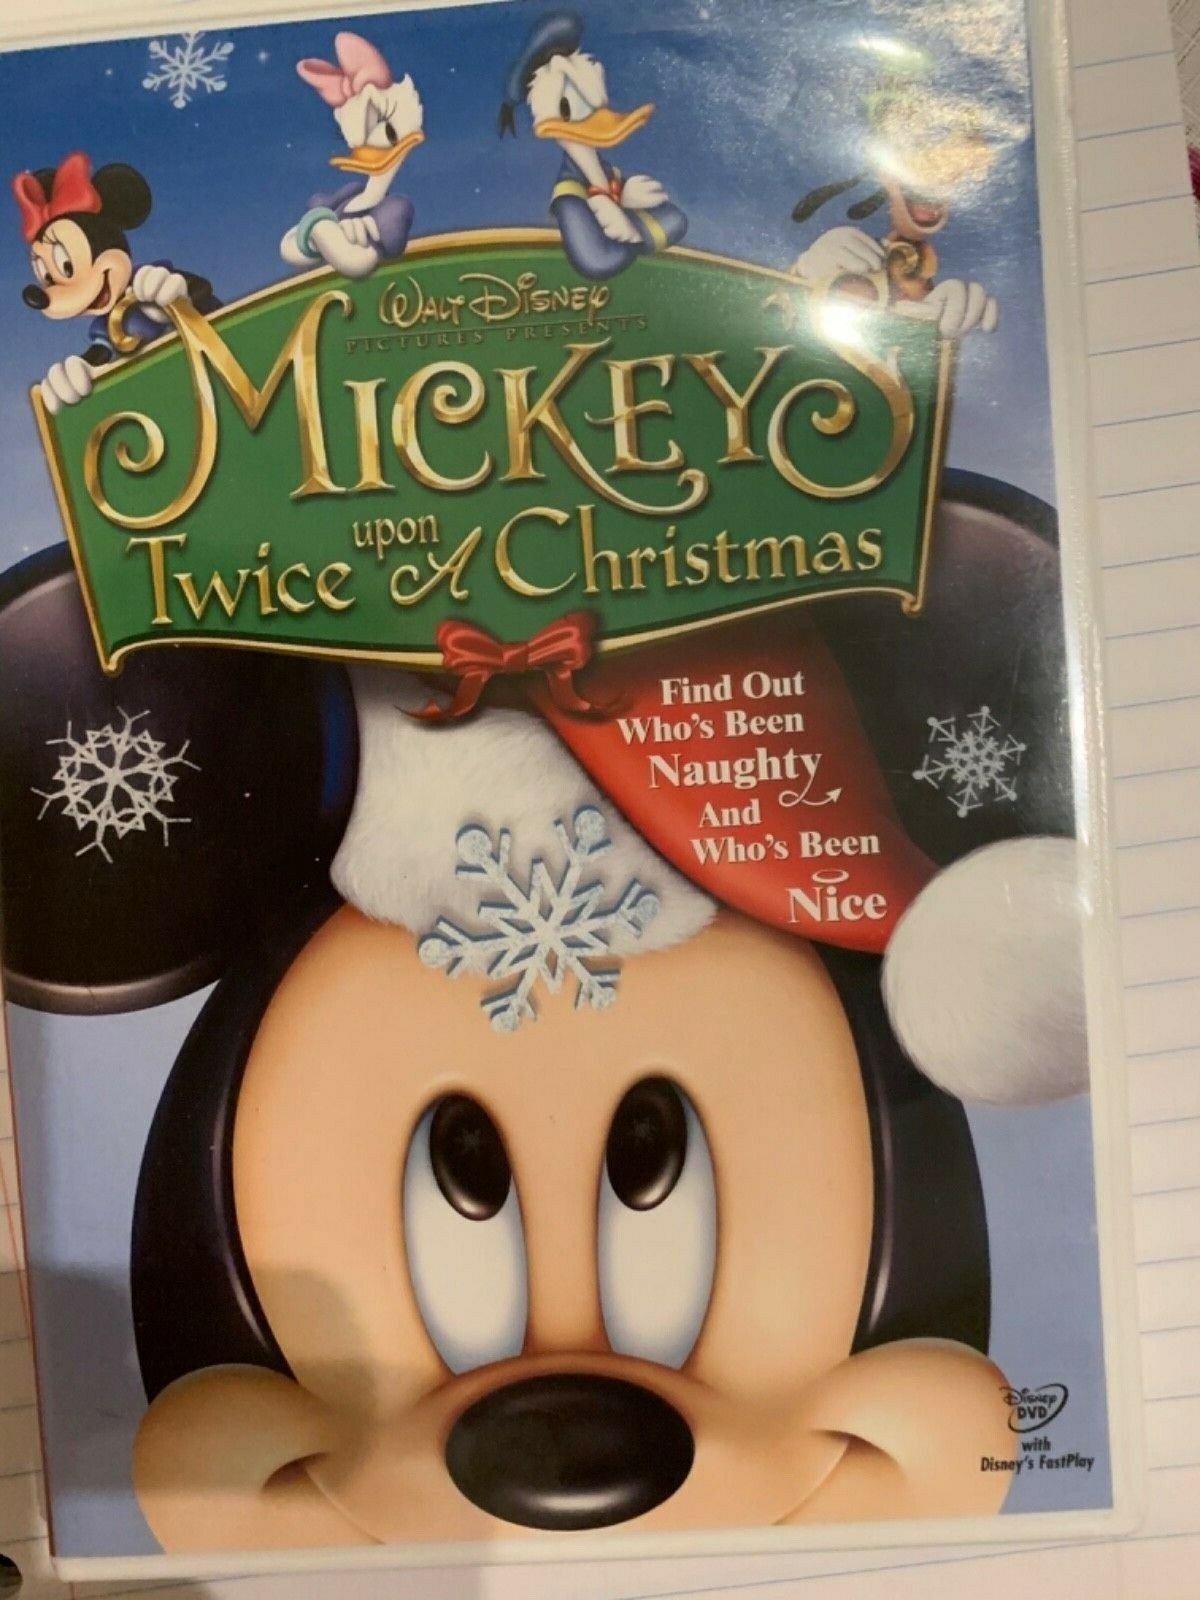 Mickeys Twice upon a Christmas DVD